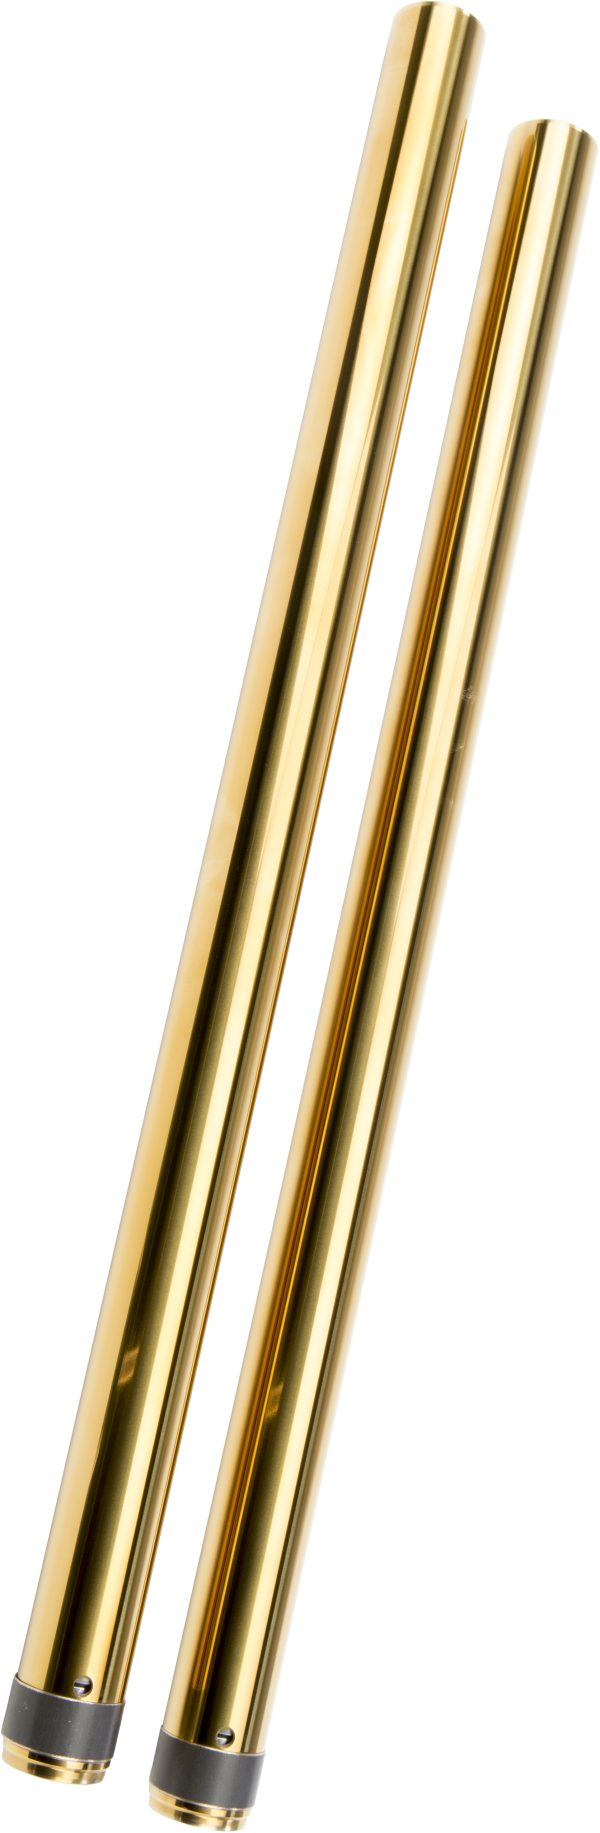 Gold, Gold Fork Tubes 39mm 25&#8243; Std Fxd for 1987-2017 Harley Davidson FXR FXRS FXDL FXD XL Models &#8211; Gold Titanium Nitrite Coating &#8211; Reduce Friction &#8211; Resist Wear &#8211; Fork Tubes, Knobtown Cycle